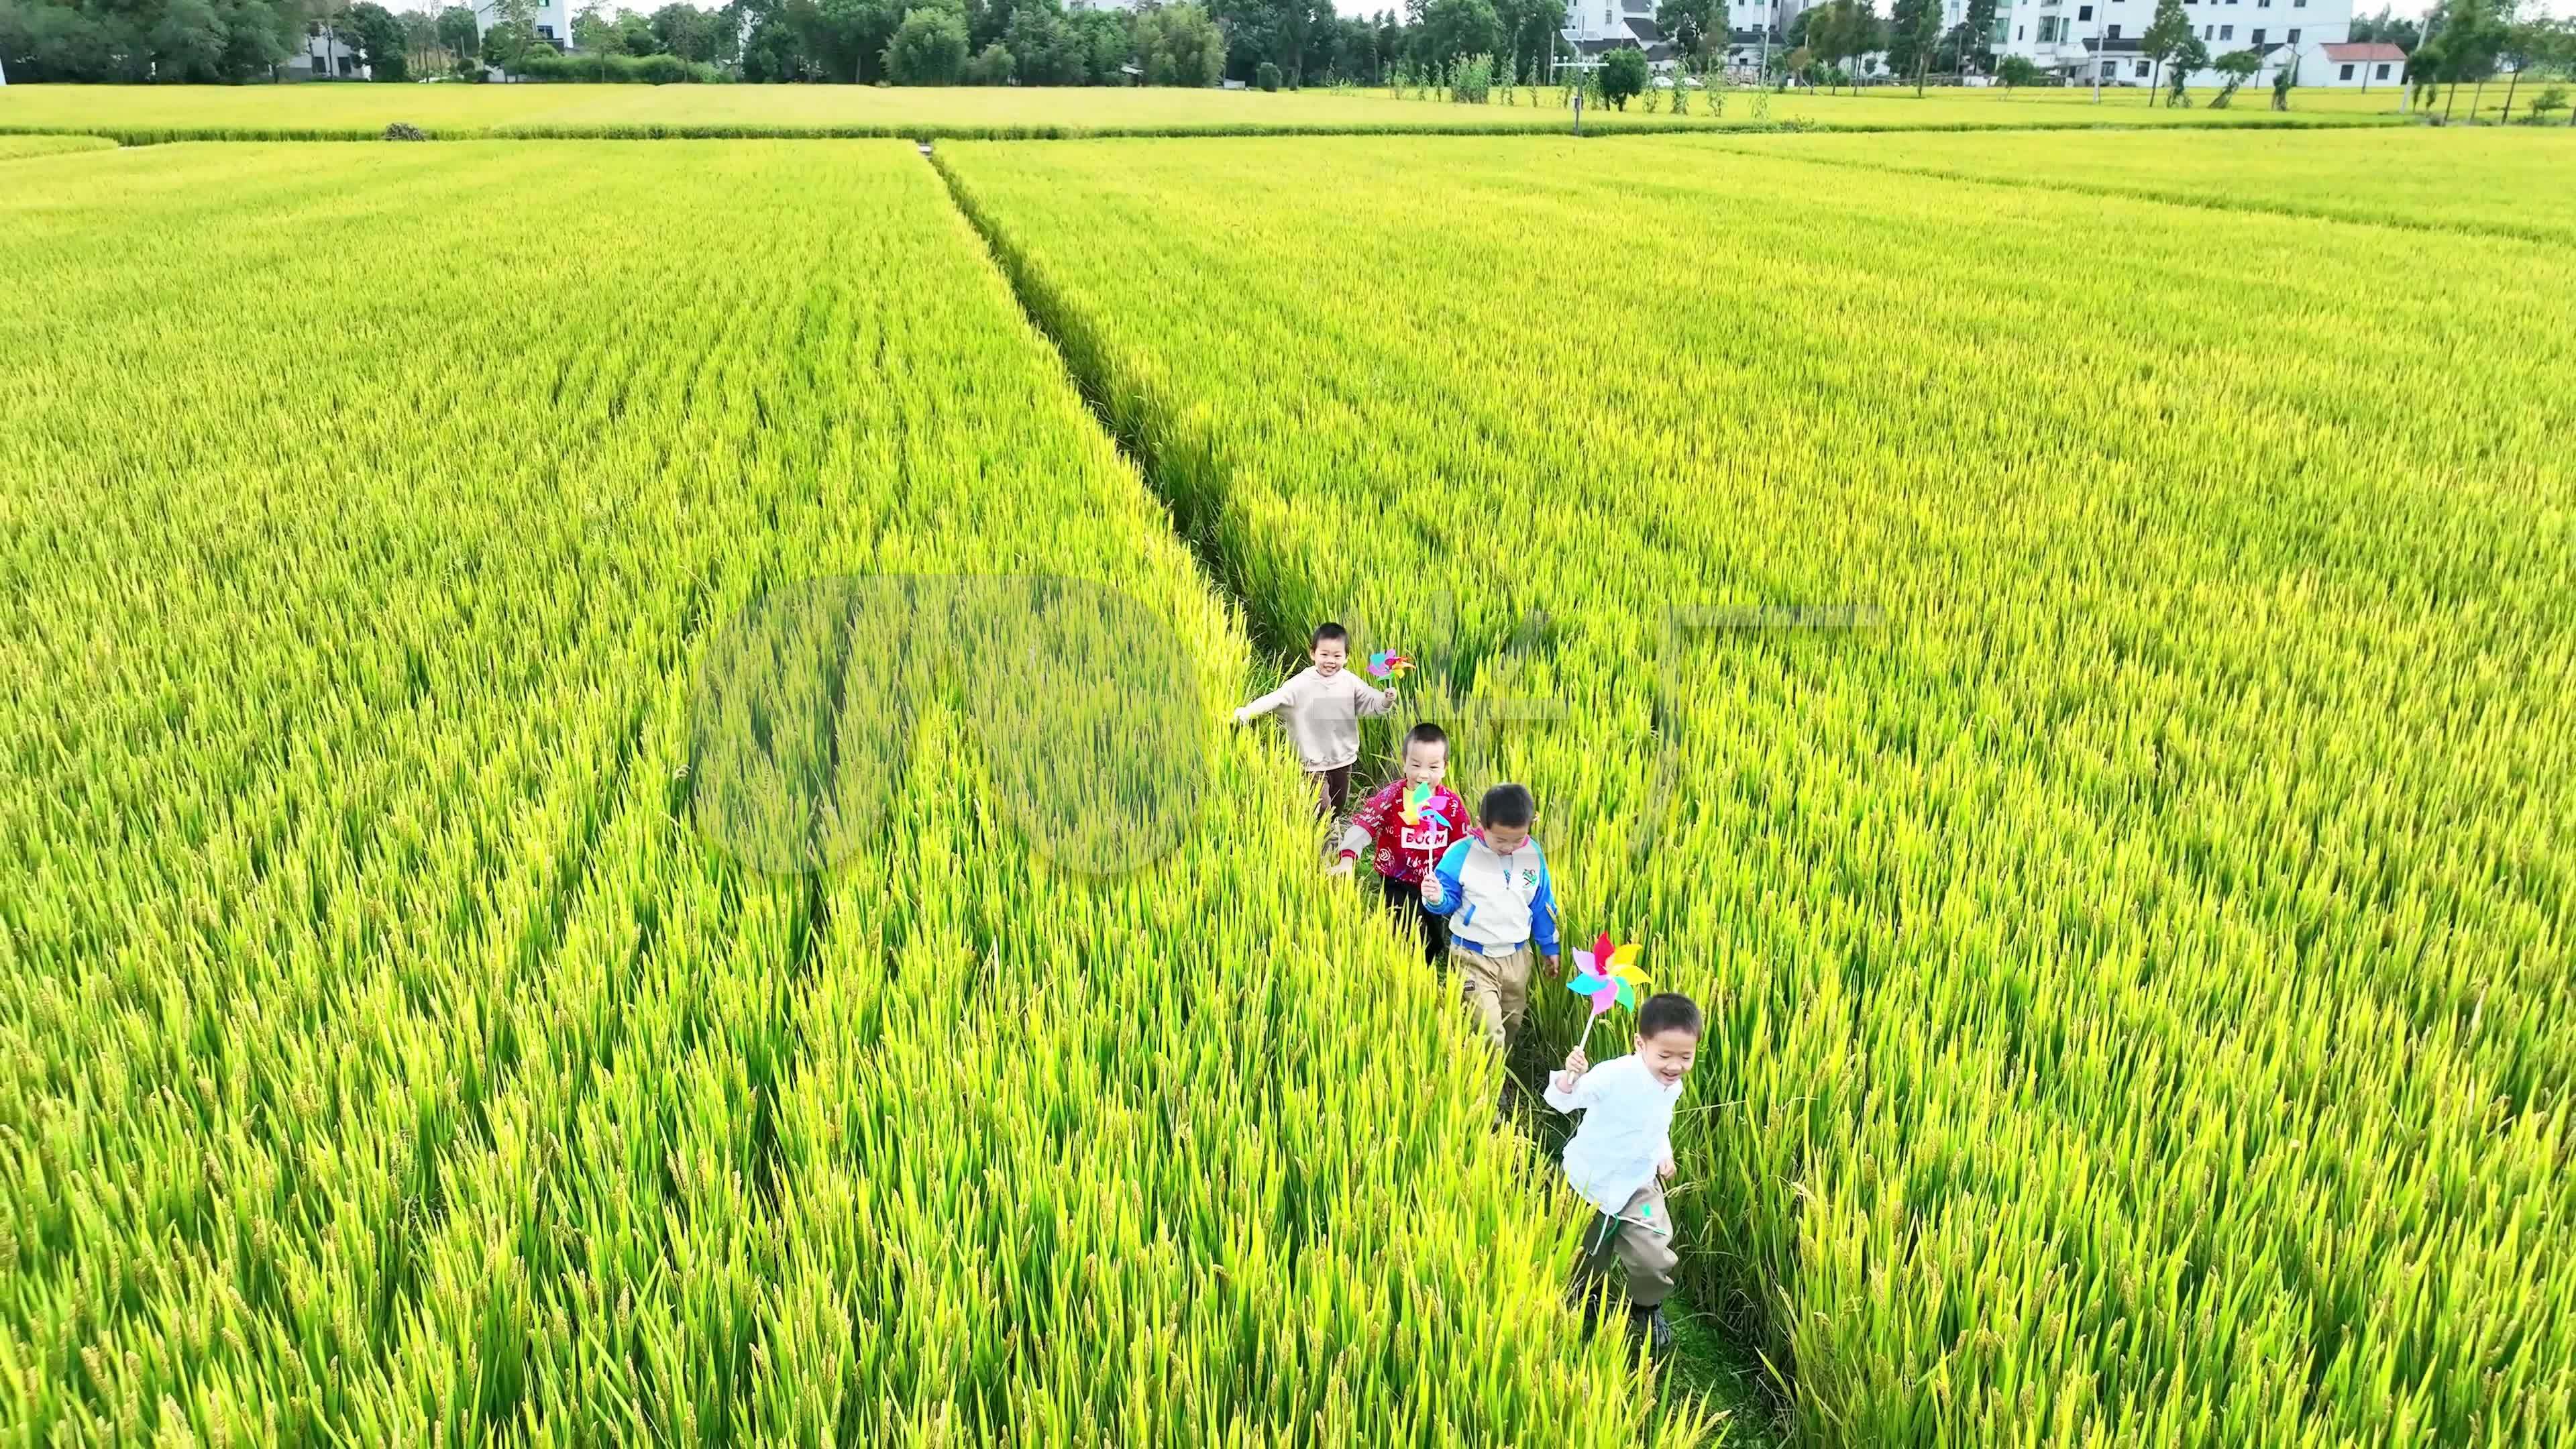 农民的孩子从泥泞的稻田里学习幼苗 库存照片. 图片 包括有 孩子, 聚会所, 团体, 姿势, 兄弟, 结构树 - 241112762